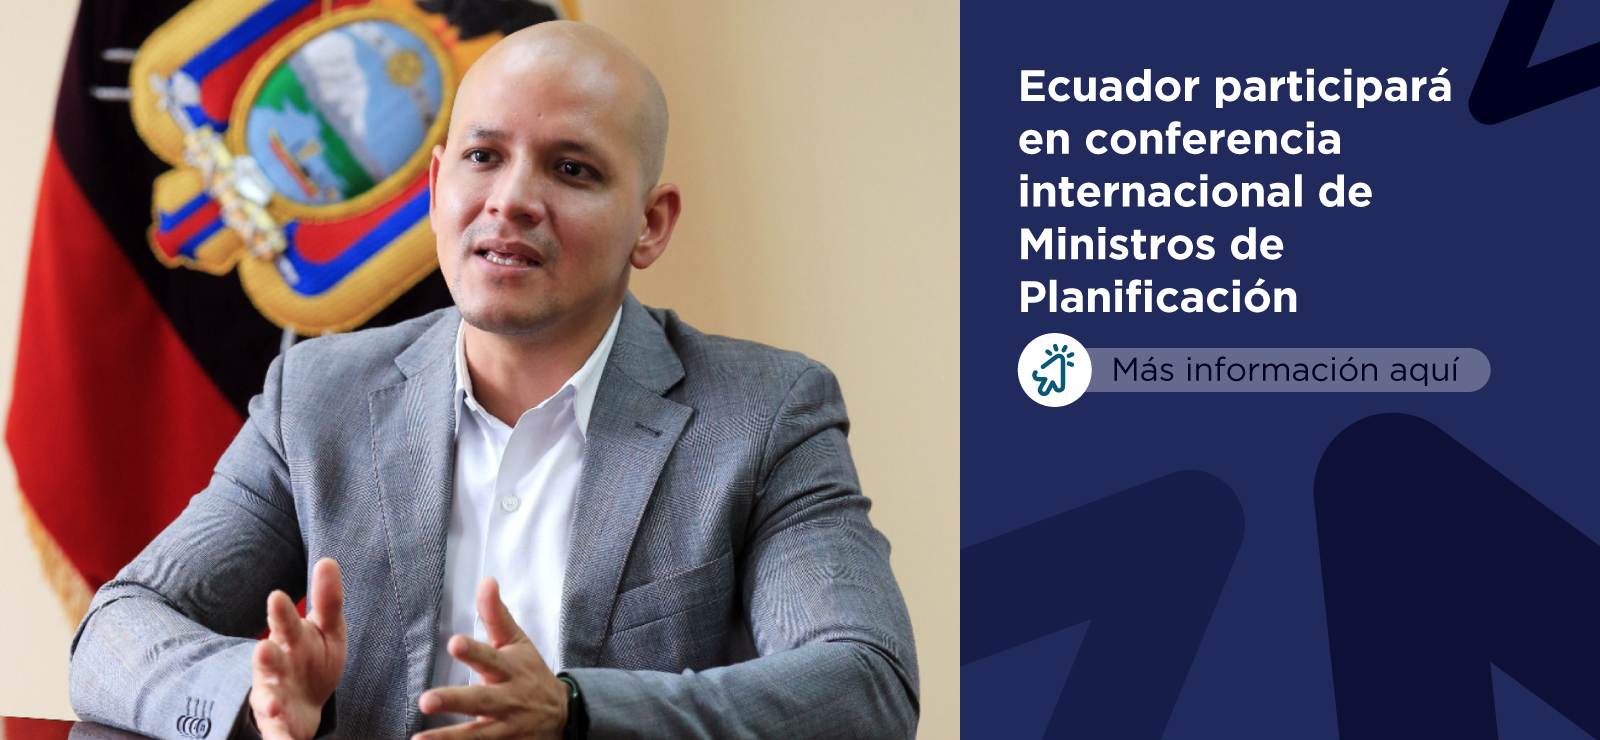 Ecuador participará en conferencia internacional de Ministros de Planificación de la región